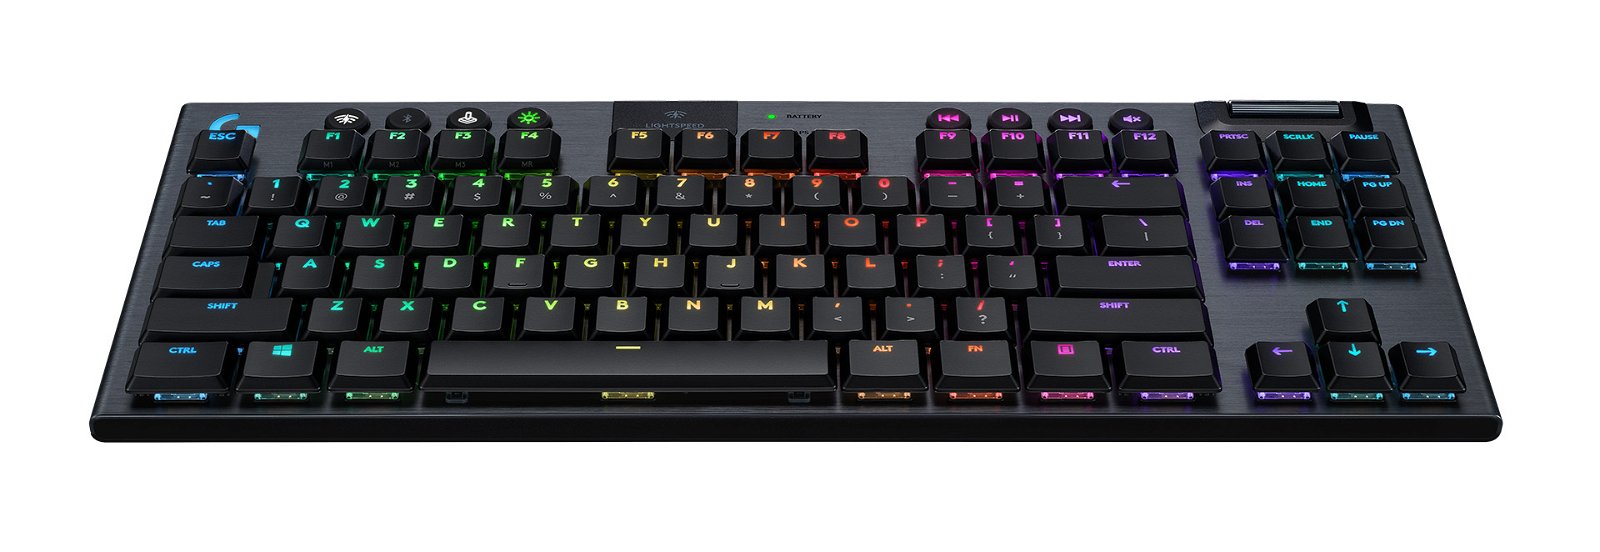 Logitech G915 TKL è la nuova tastiera meccanica per giocatori